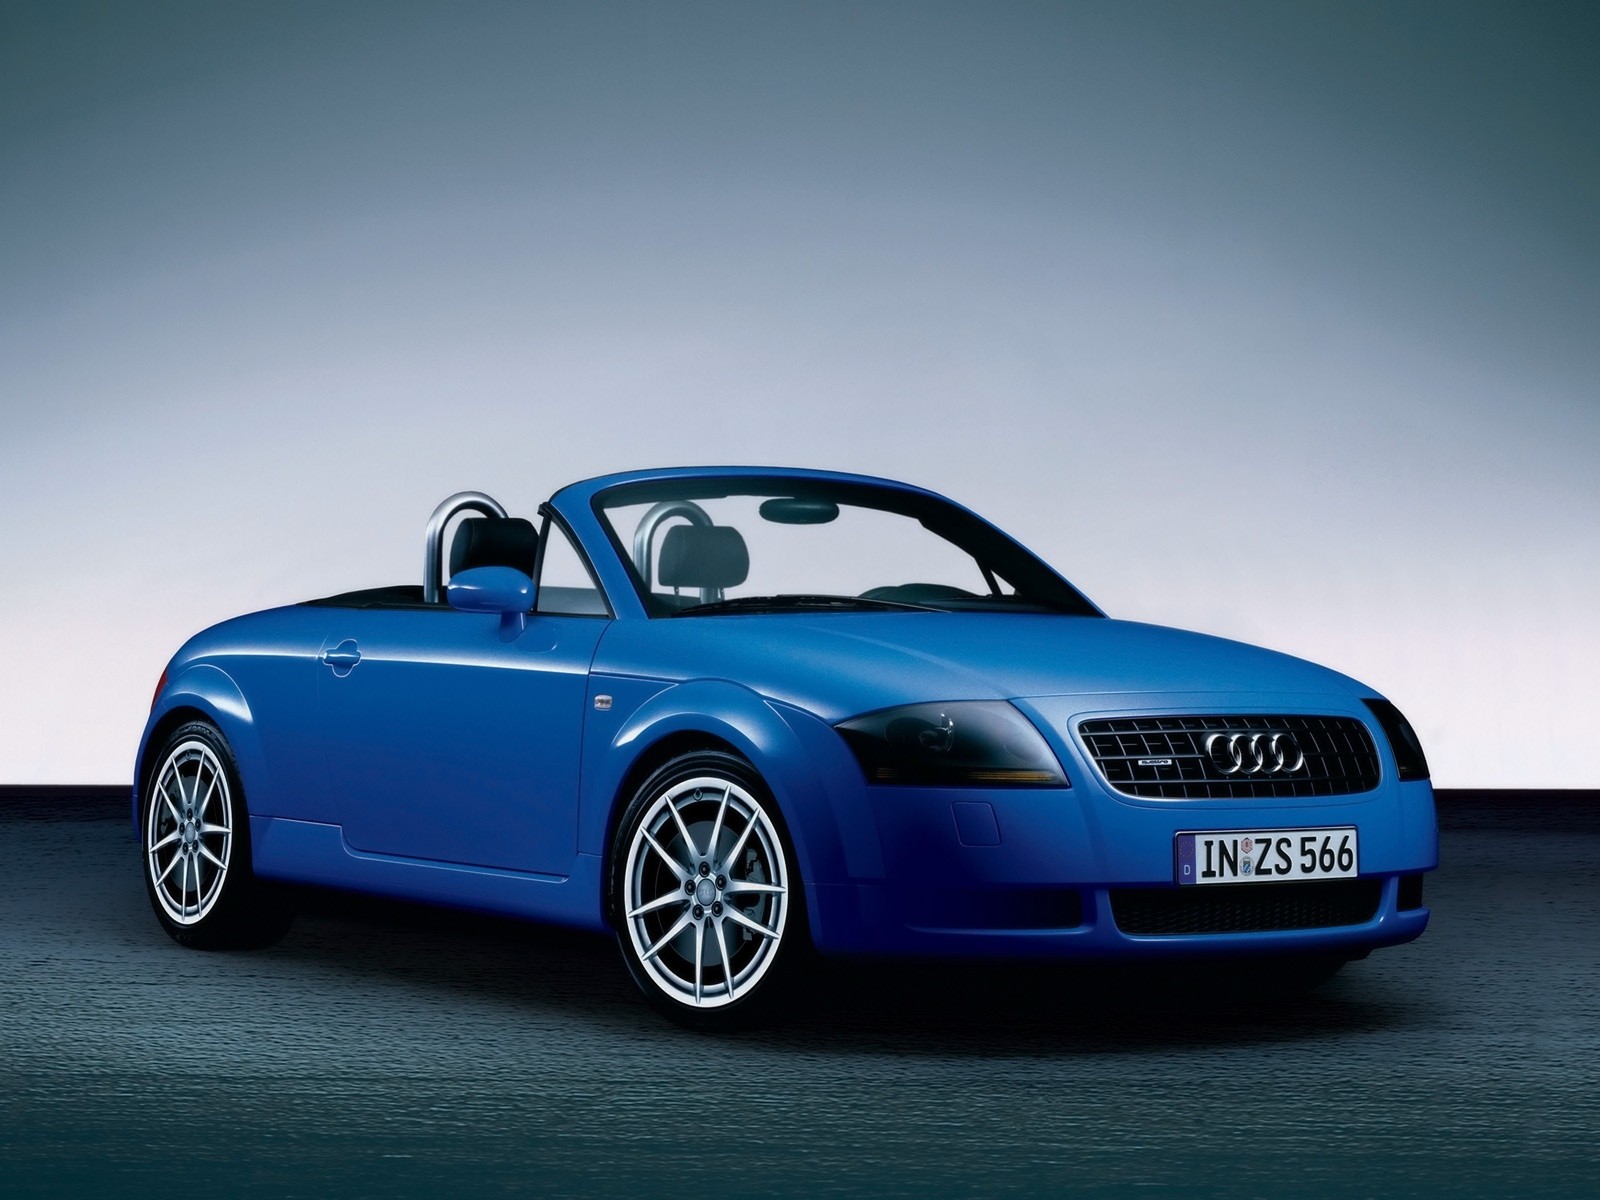 Wallpaper Audi TT Advance blue Cars Machines Technics PicsFab